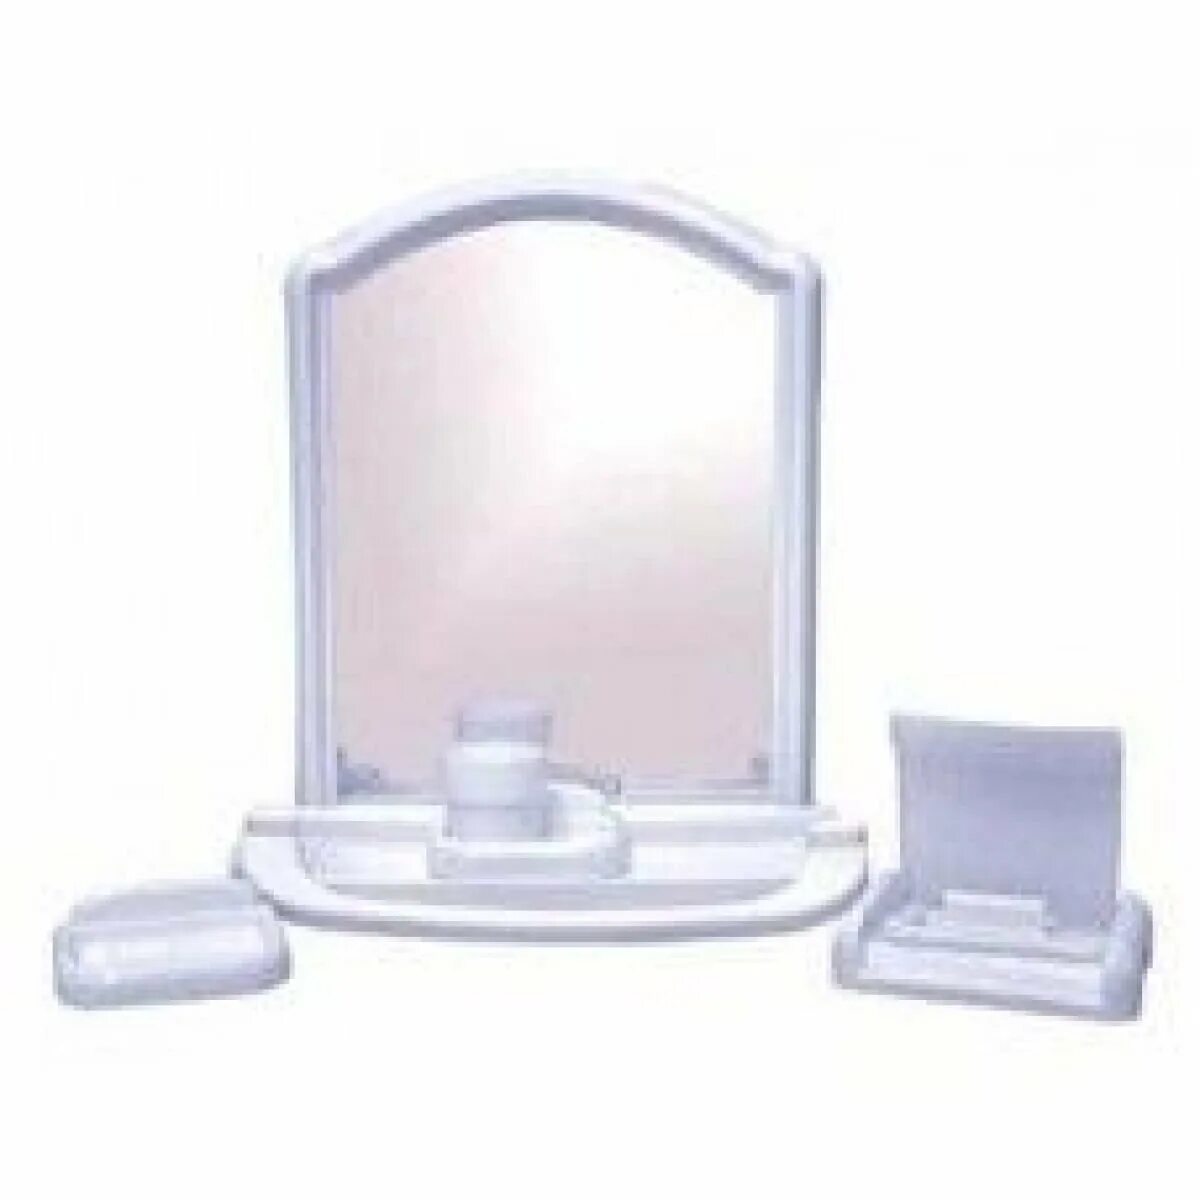 Зеркальный набор для ванной комнаты артикул РП-861. Зеркальный набор Orio белый. Набор для ванной с зеркалом